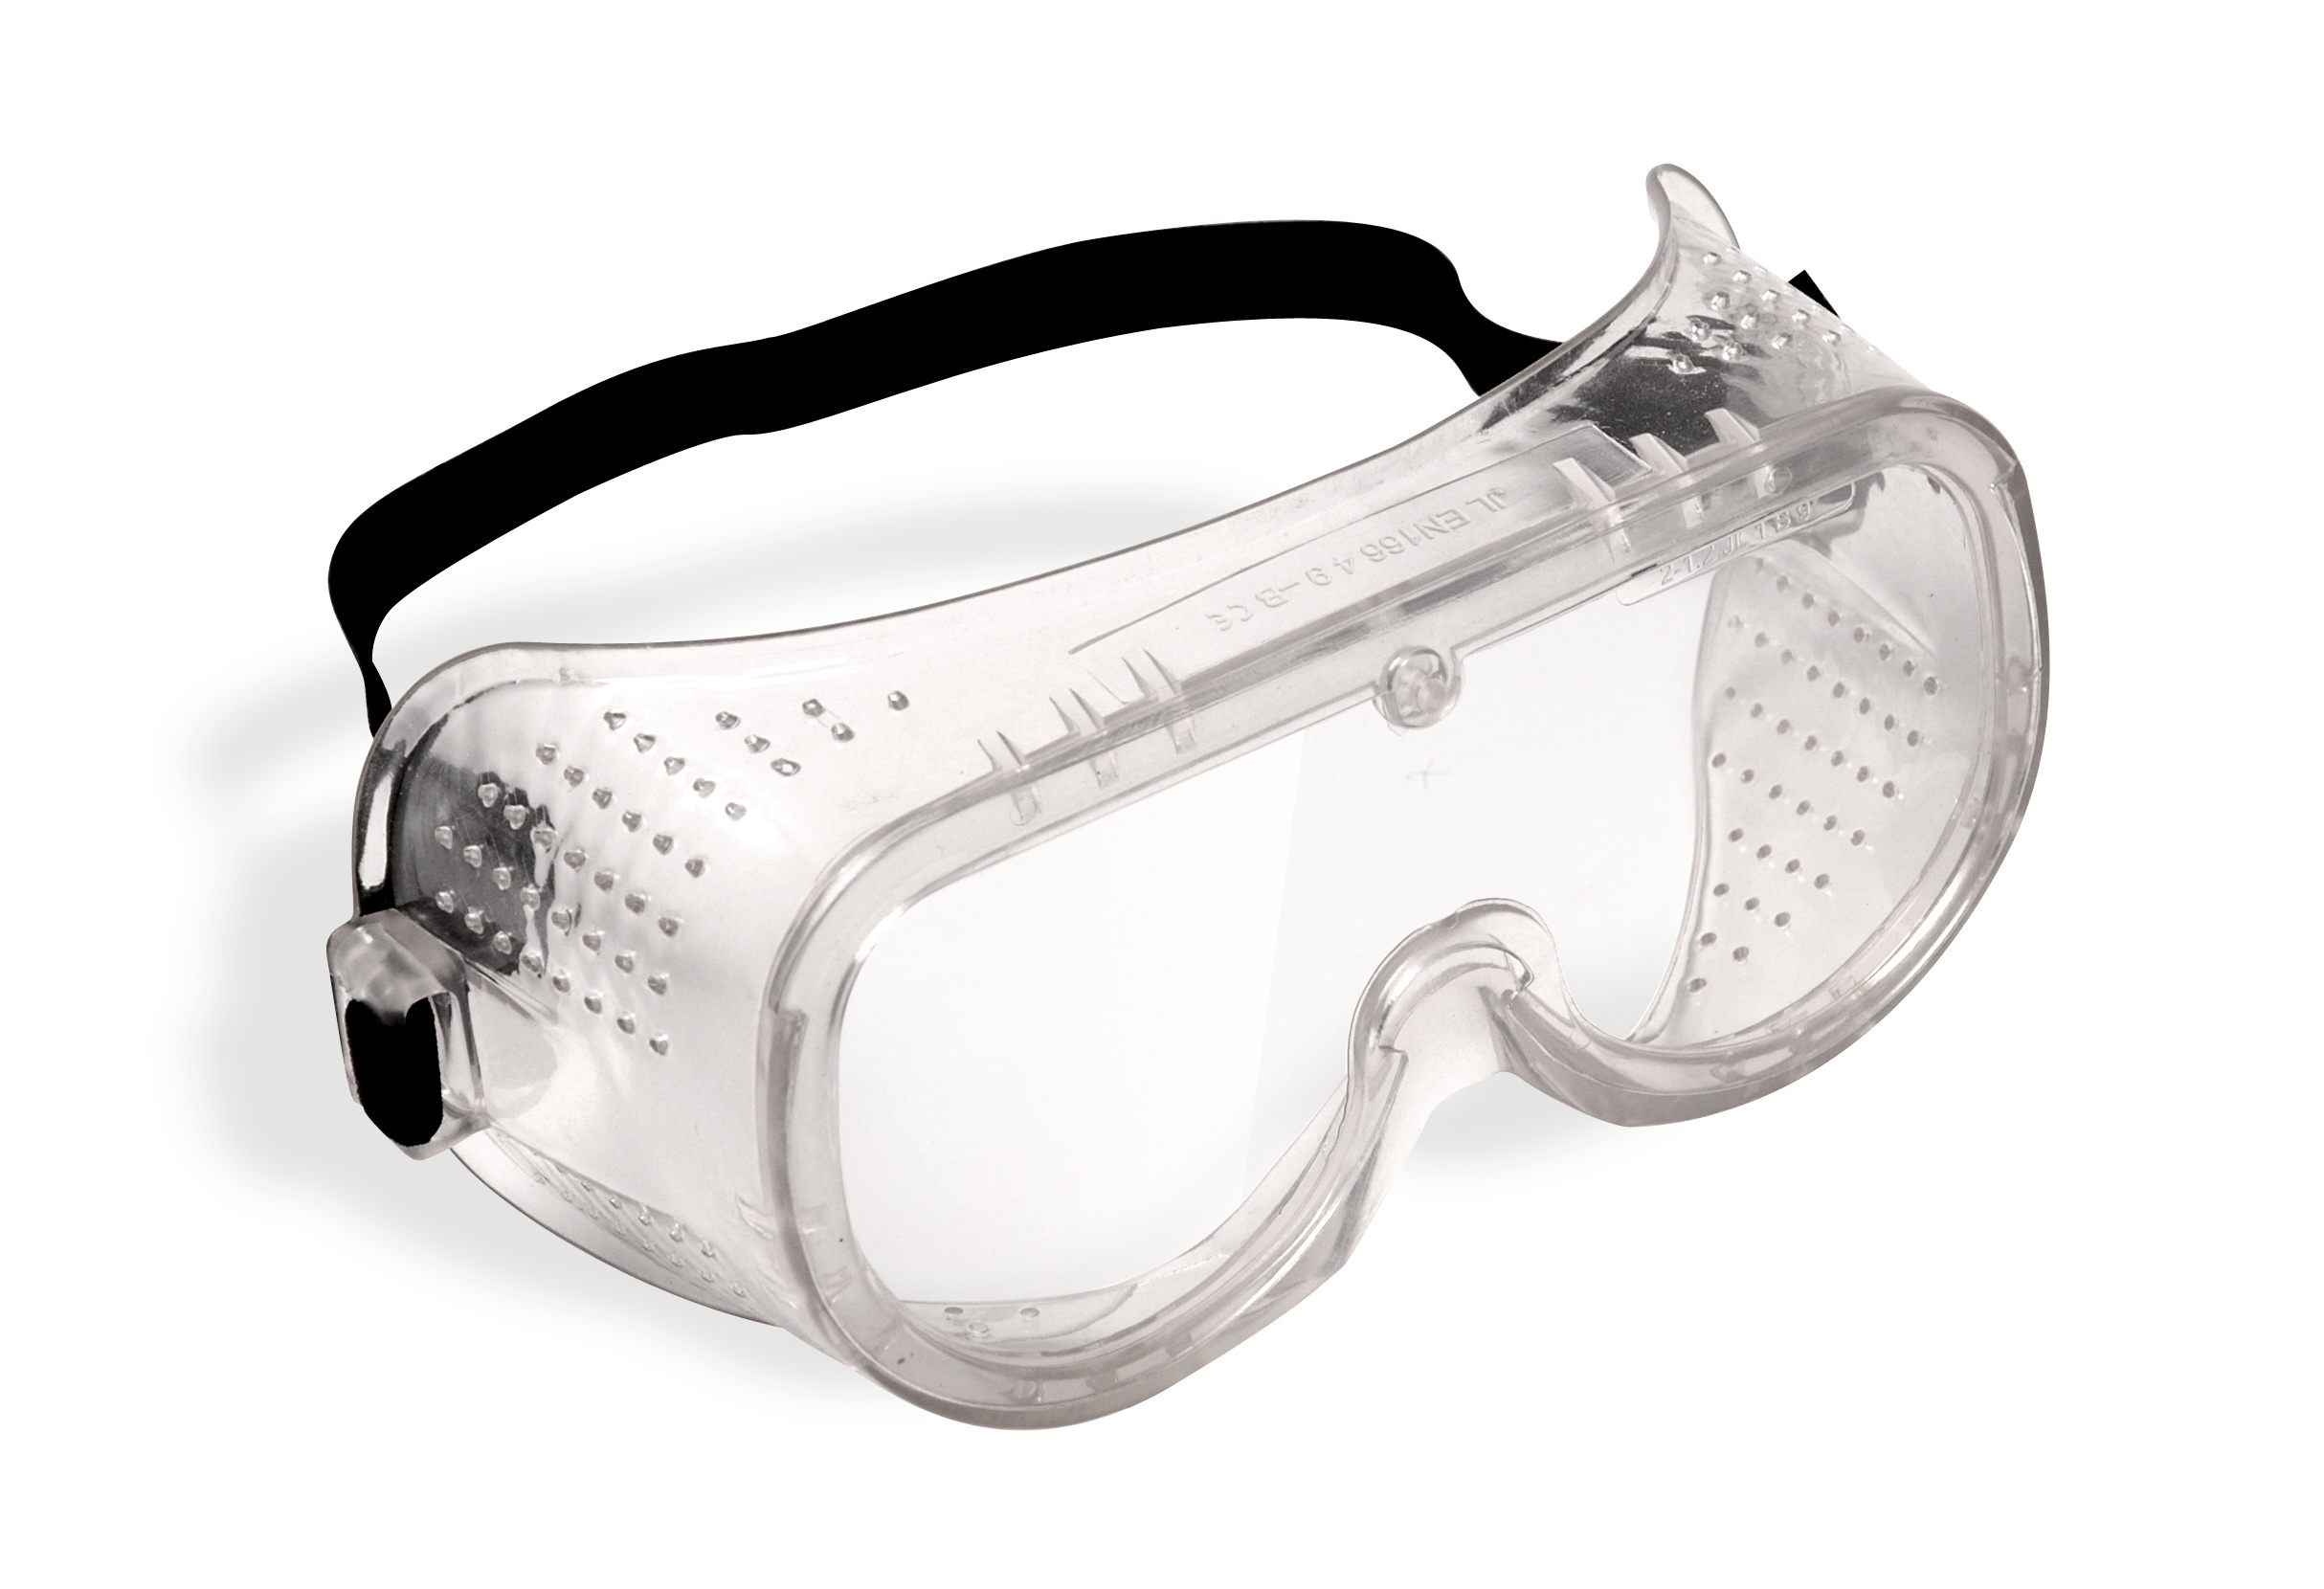 Тест защитных очков. Jsg1011-c Chem Vision очки защитные закрытого типа. Очки защитные "Исток" закрытого типа с прямой вентиляцией. Очки защитные с прямой вентиляцией р2 ПВ 964738. Очки защитные с прямой вентиляцией 89161.